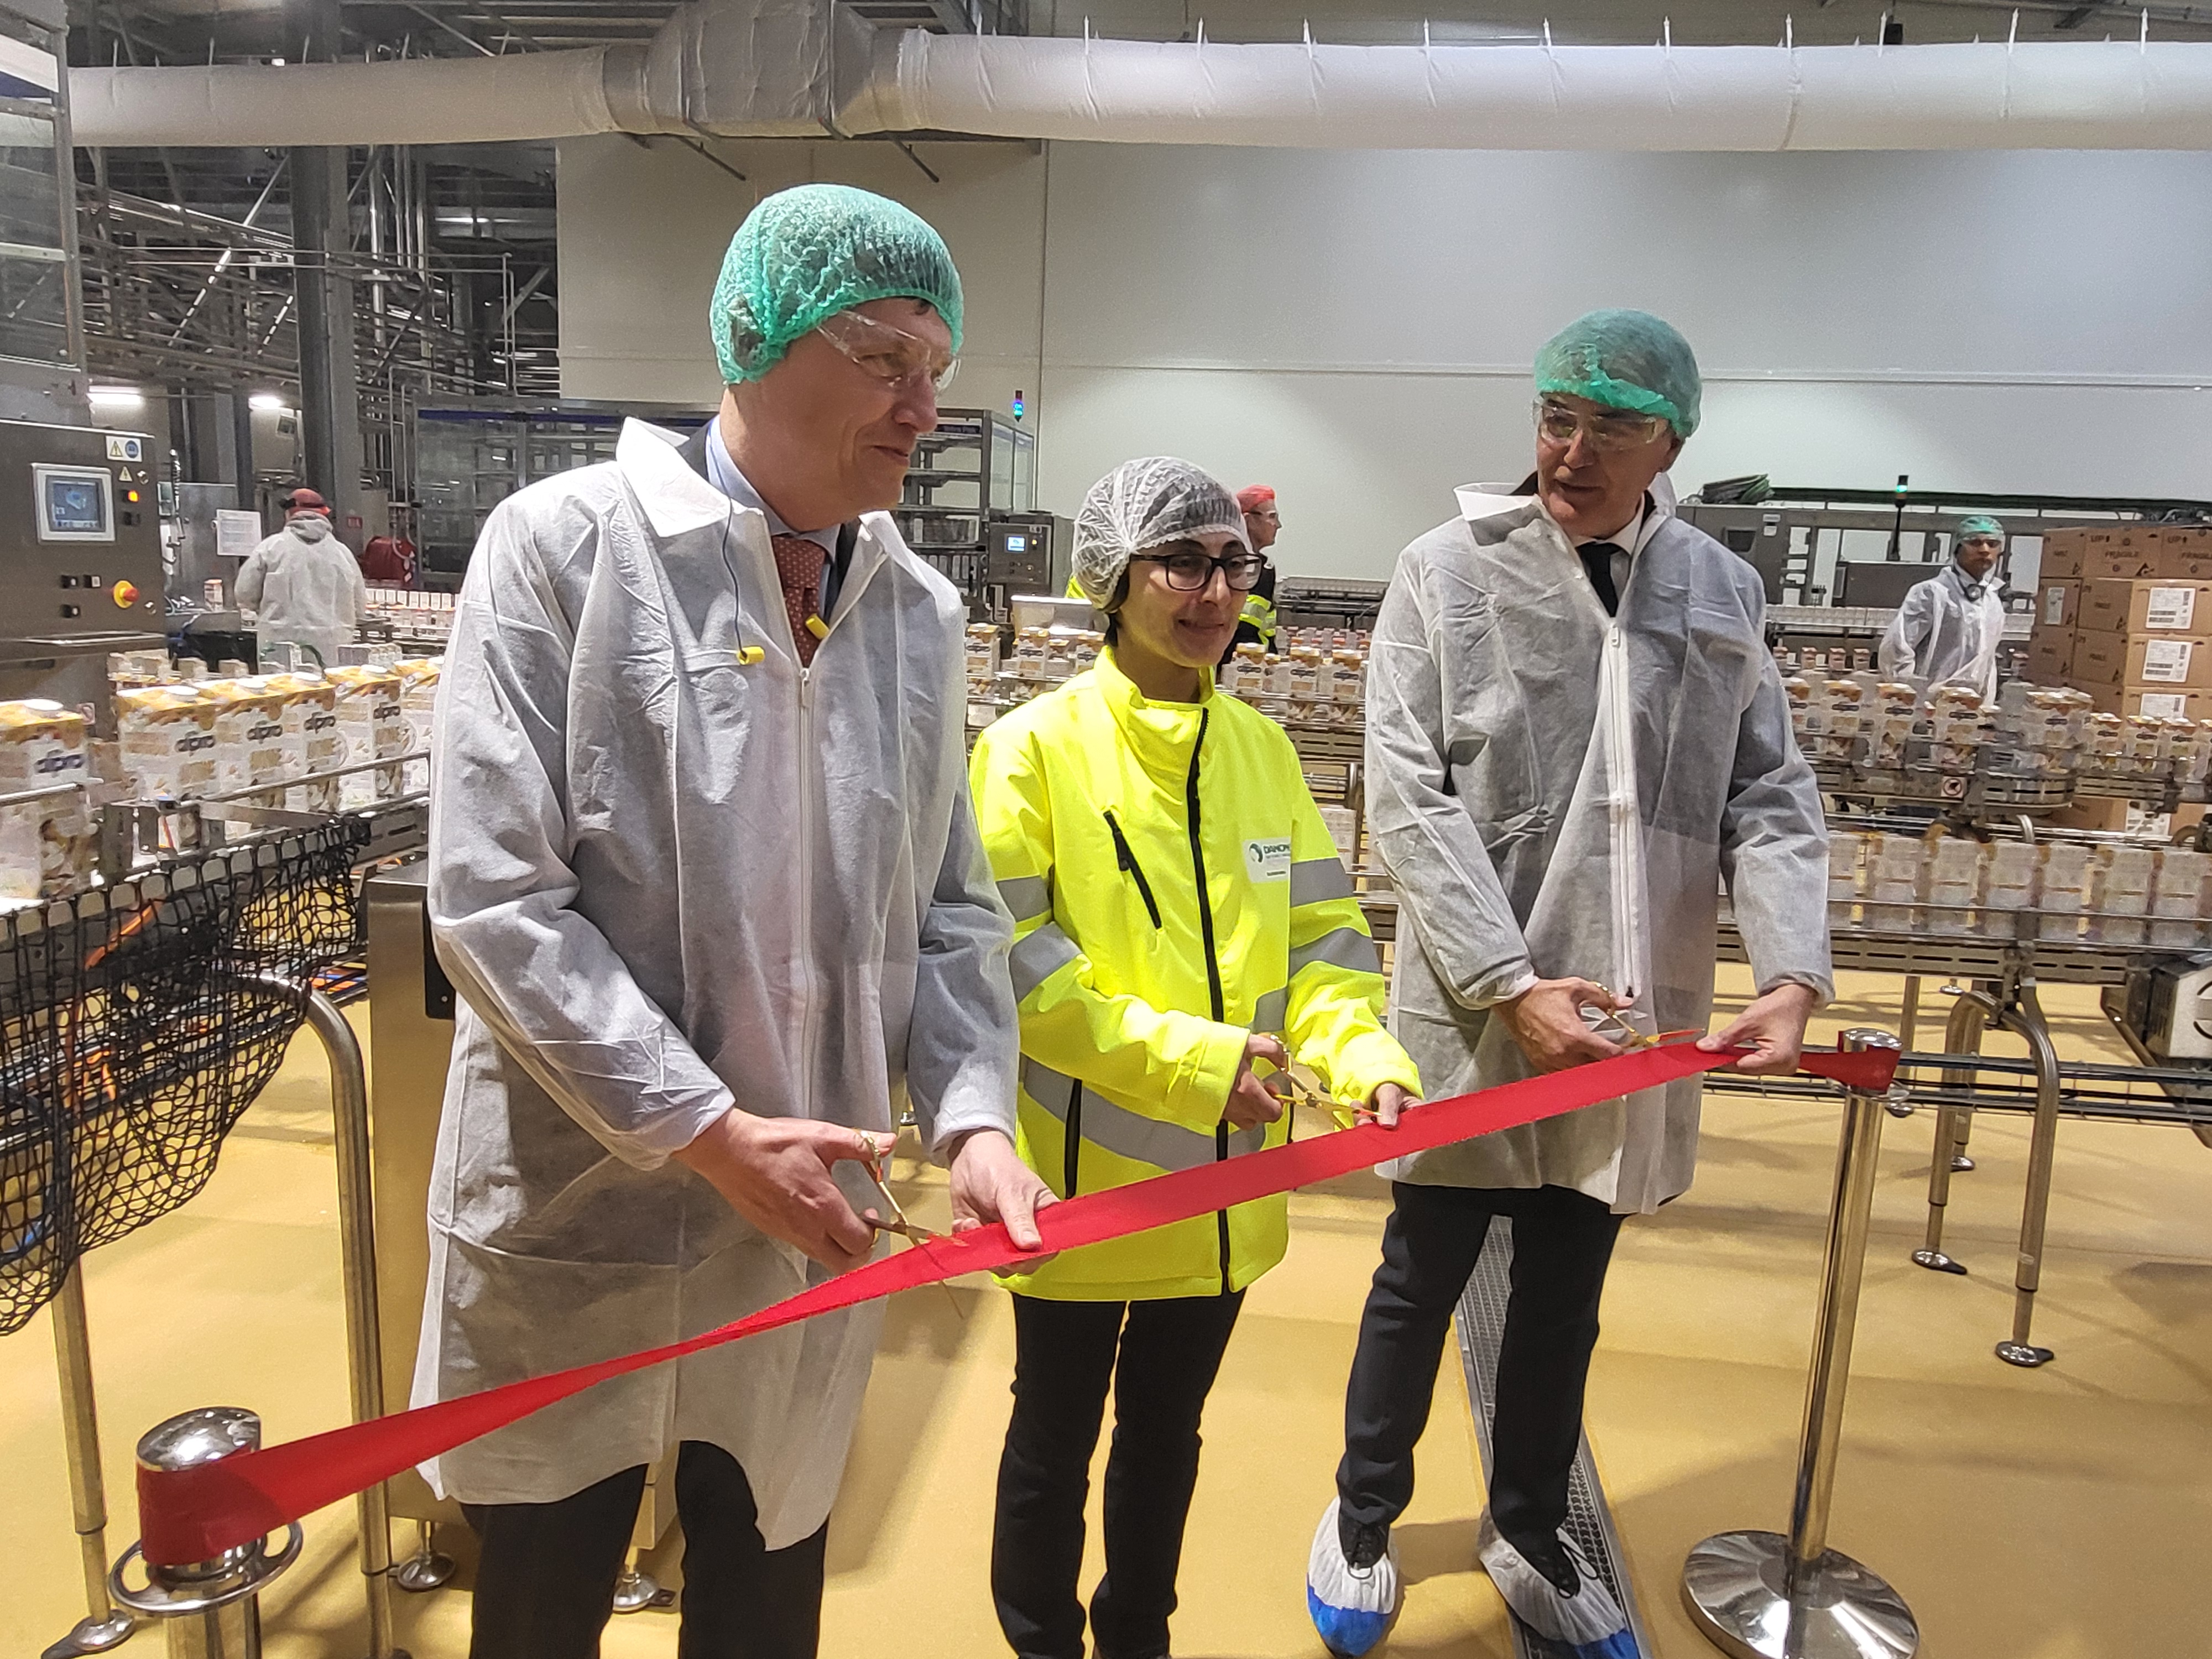 Inauguration de la "nouvelle" usine avec notamment Antoine de Saint-Affrique, directeur général de Danone (à gauche) et Mina Blouri, la nouvelle directrice de l'usine du Gers (au milieu). (Photo : Anthony Assémat - Entreprises Occitanie)